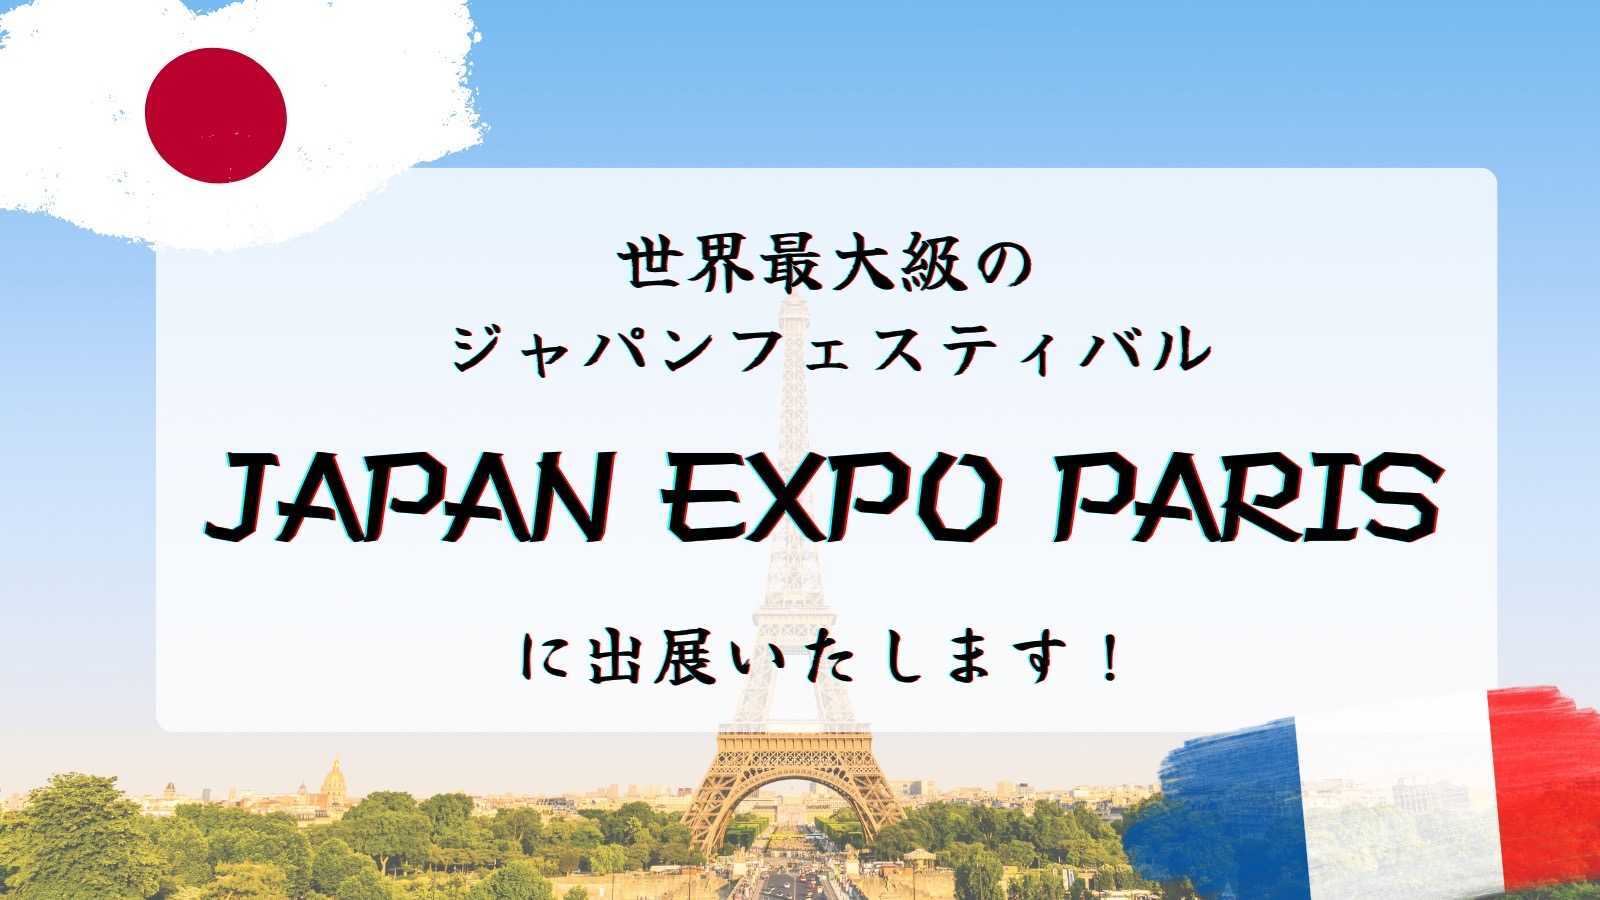 7月にパリで開催されるJAPAN EXPOに出展します！